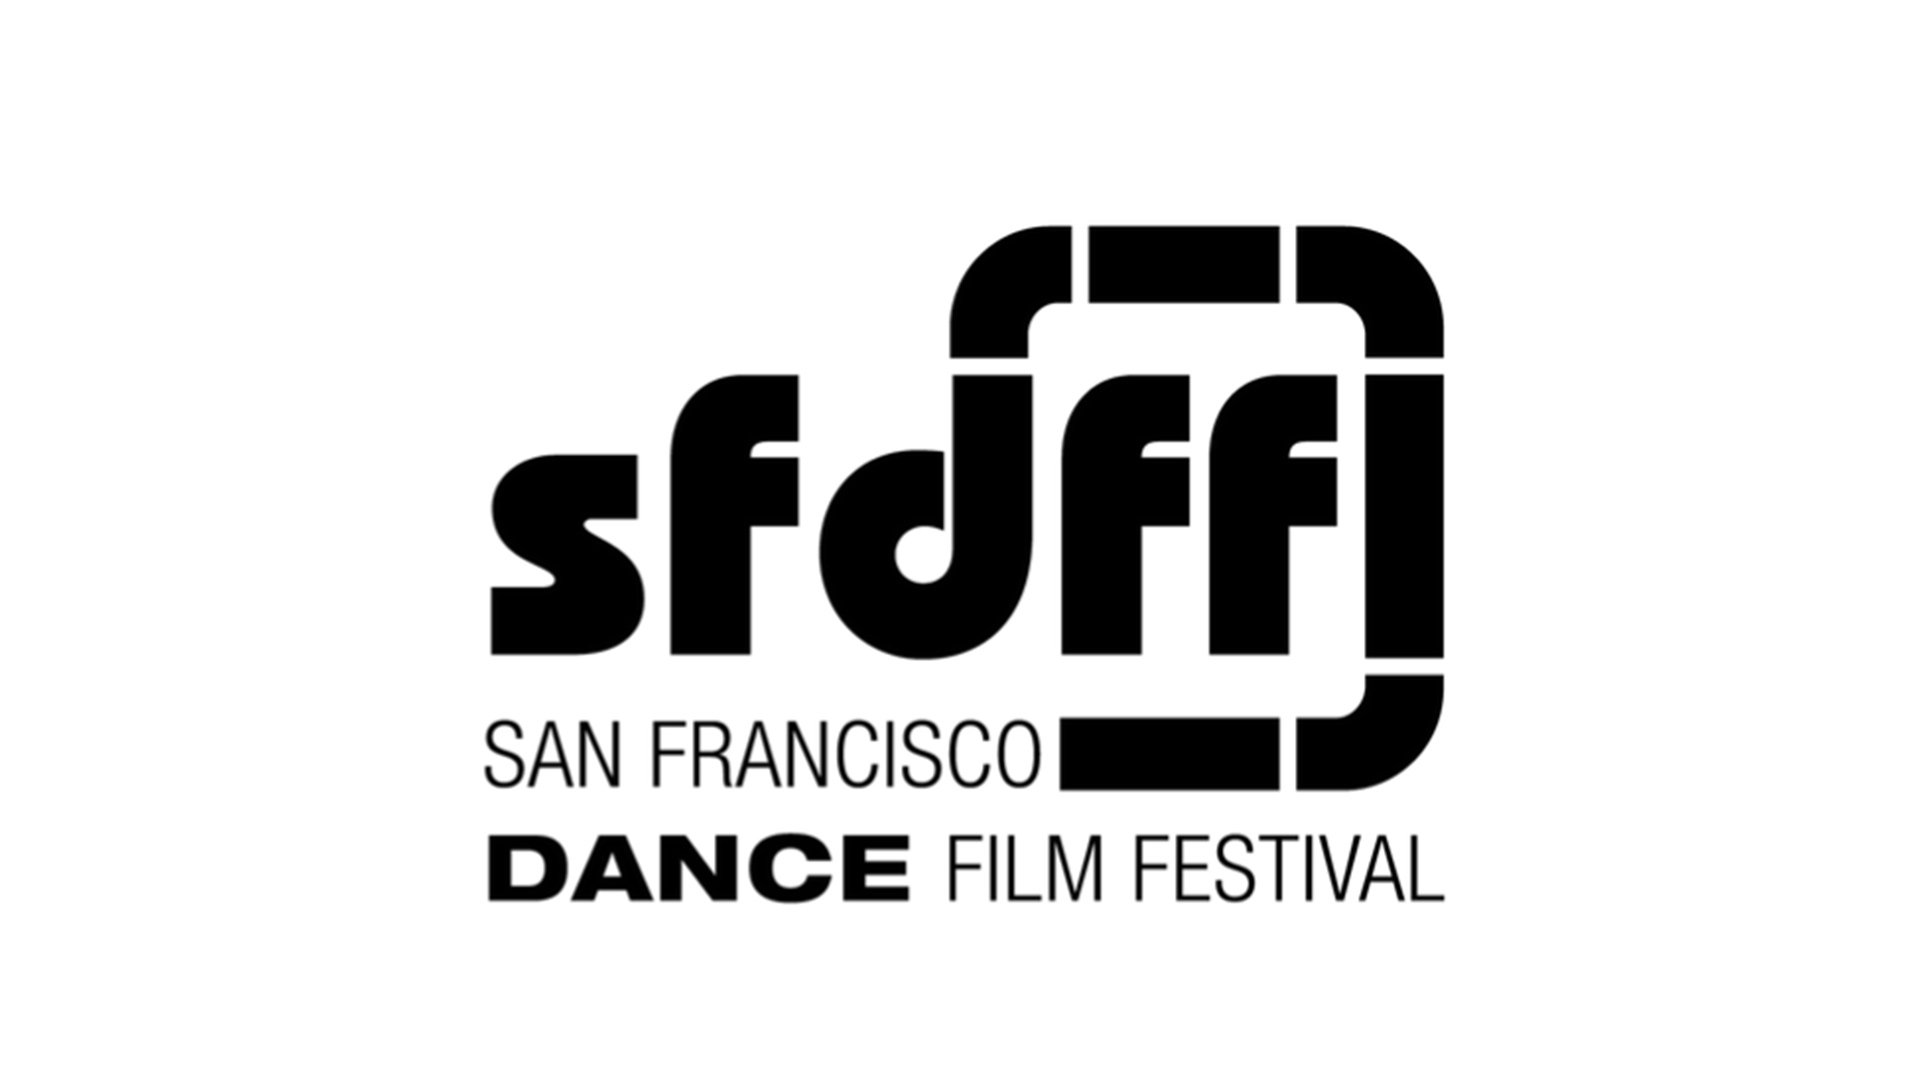 sfdff-logo.jpg